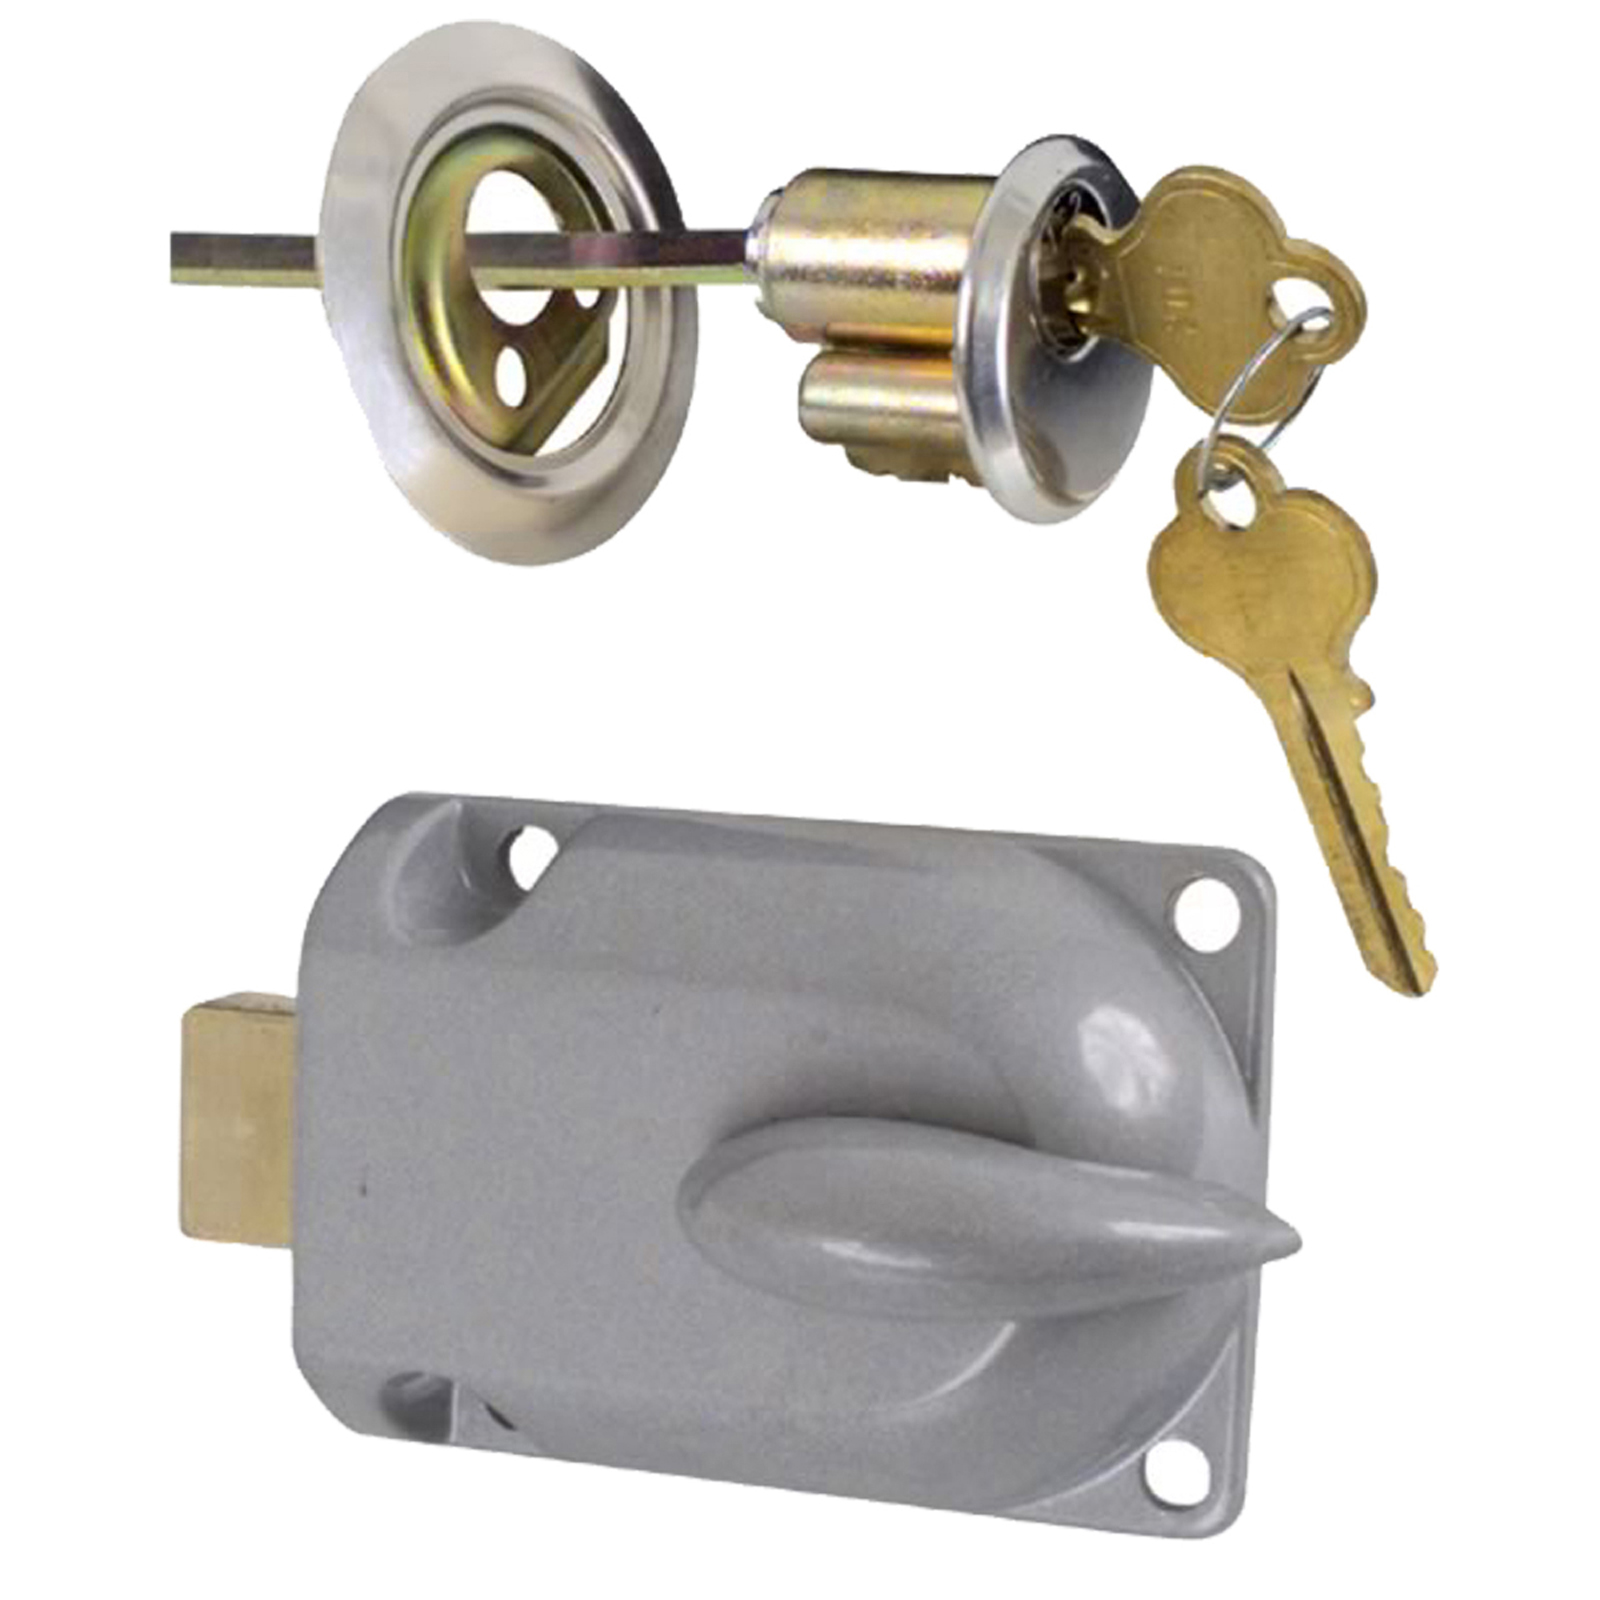 Ideal Security Inc. Garage Door Lock